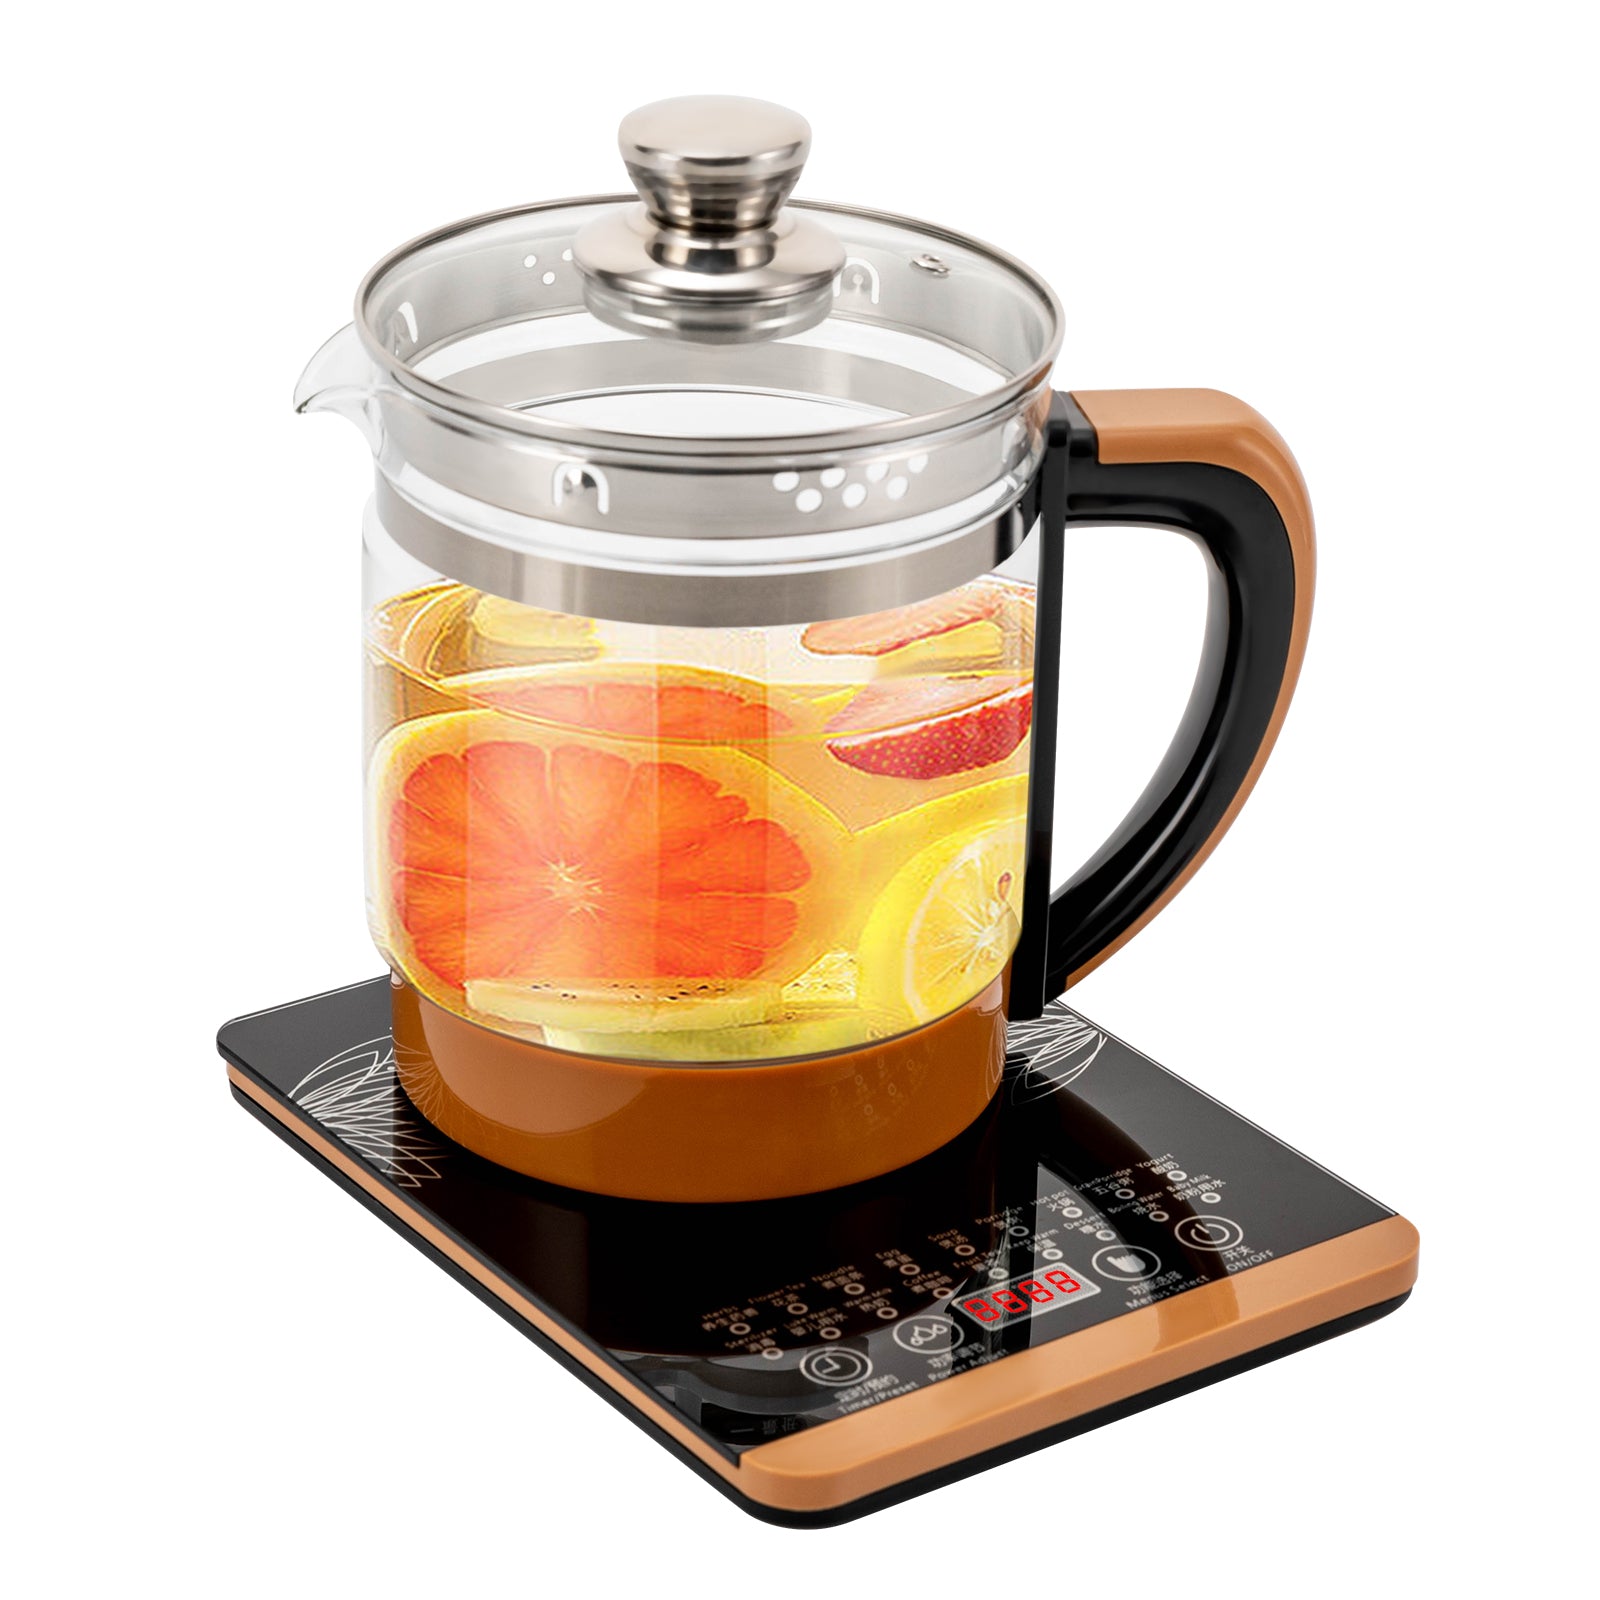 Bollitore per tè in vetro, 1,8 l, 2 in 1, con temperatura selezionata,pannello di controllo touch,macchina da tè